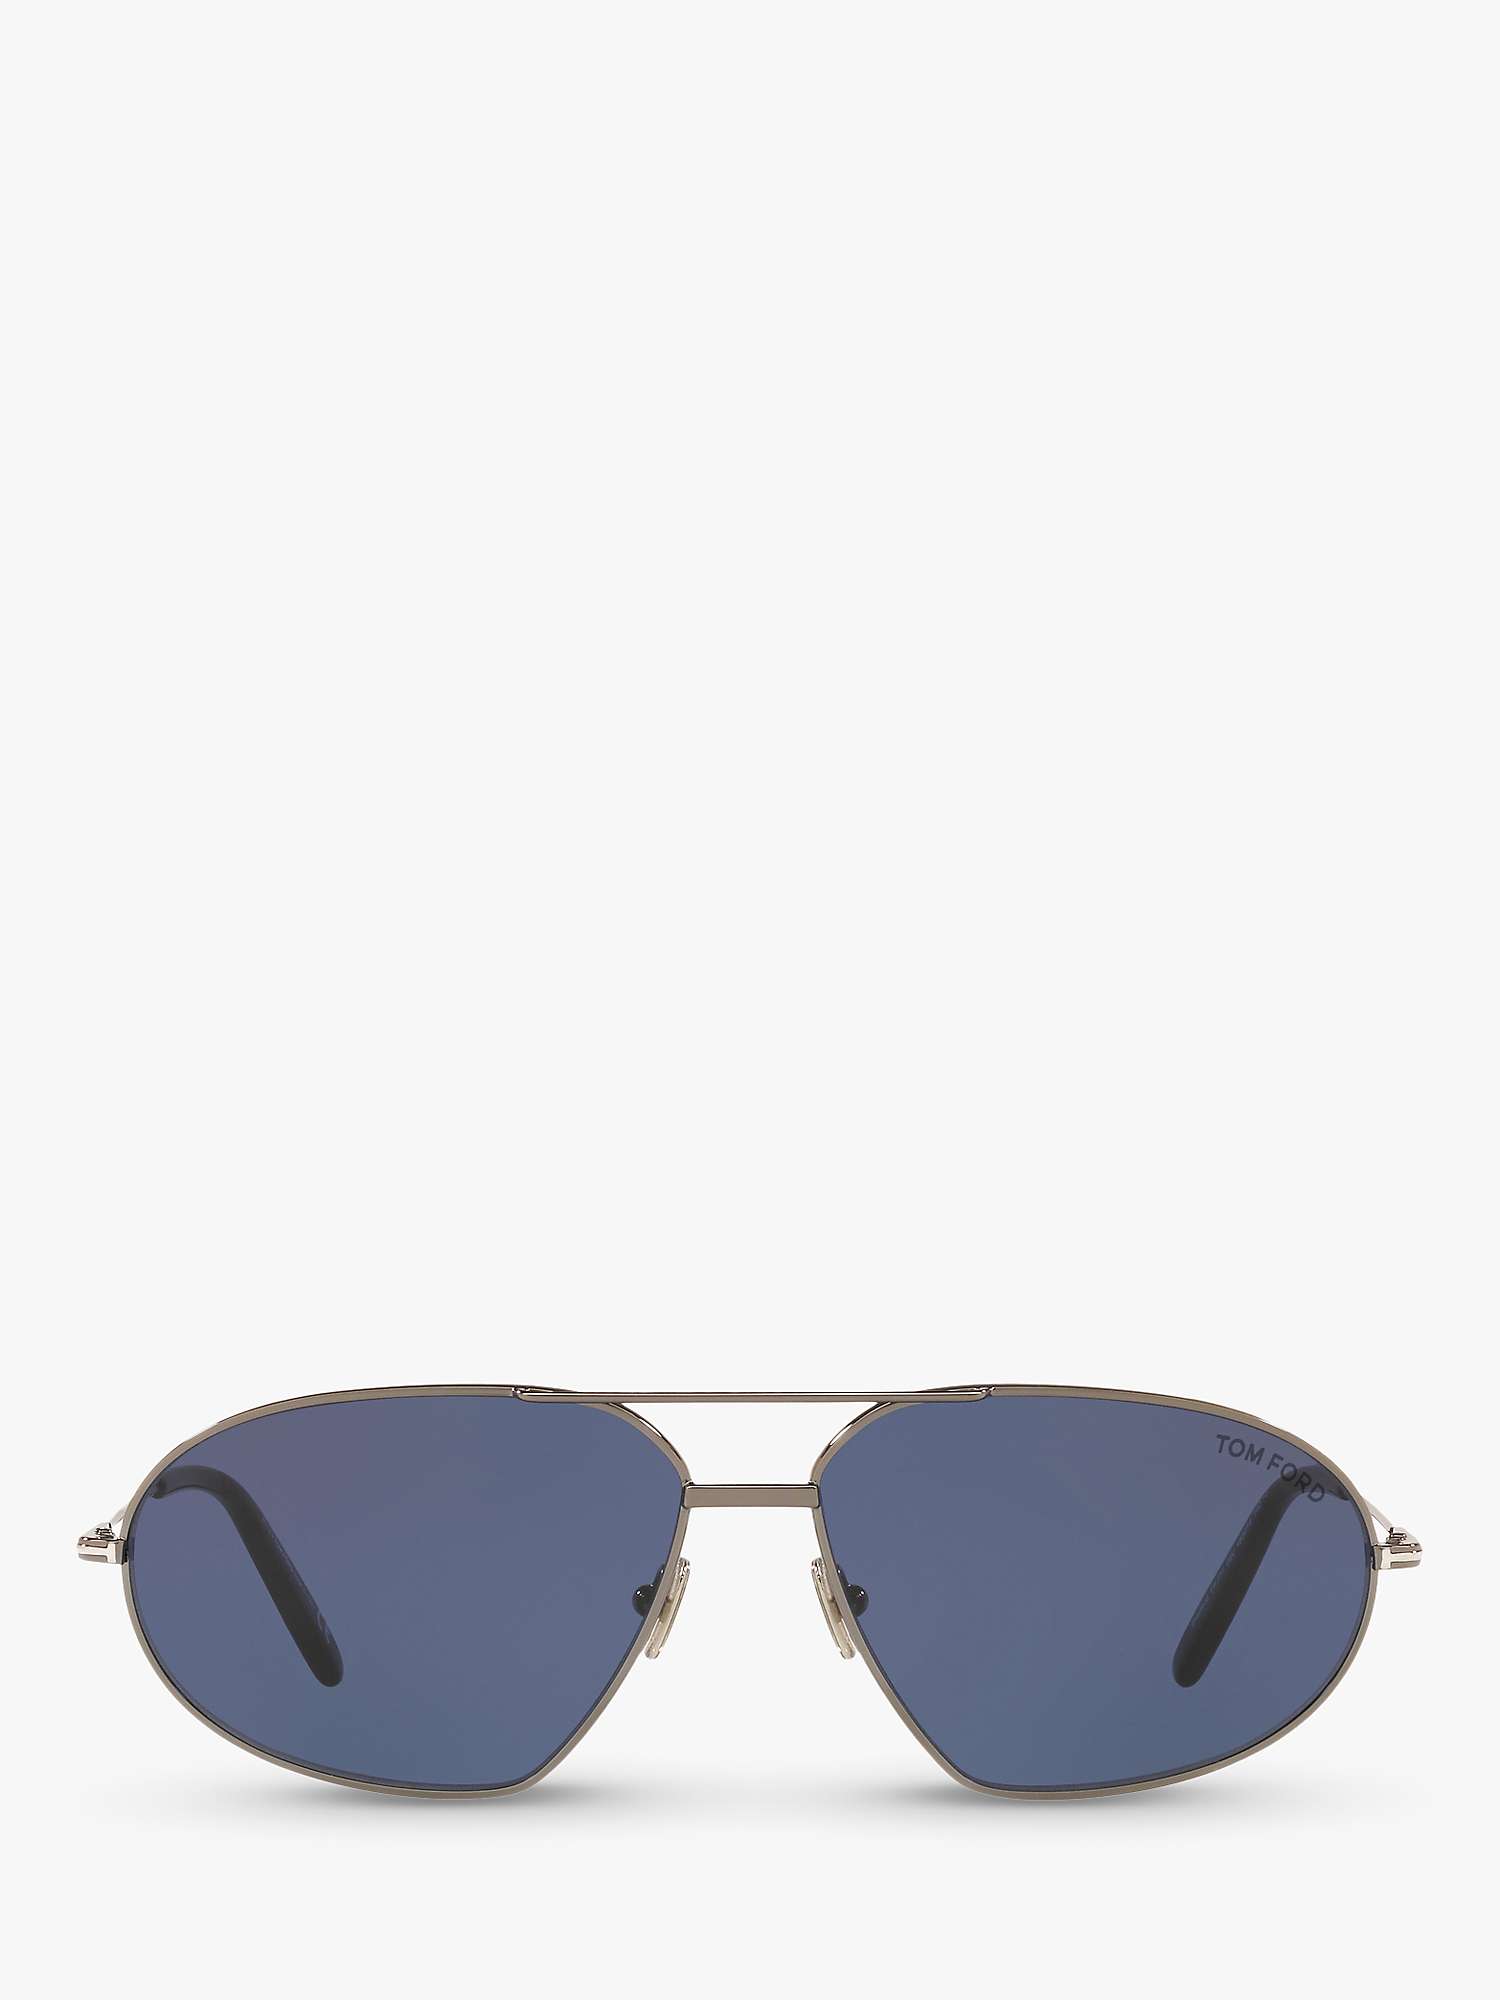 Buy TOM FORD FT0771 Men's Bradford Aviator Sunglasses Online at johnlewis.com